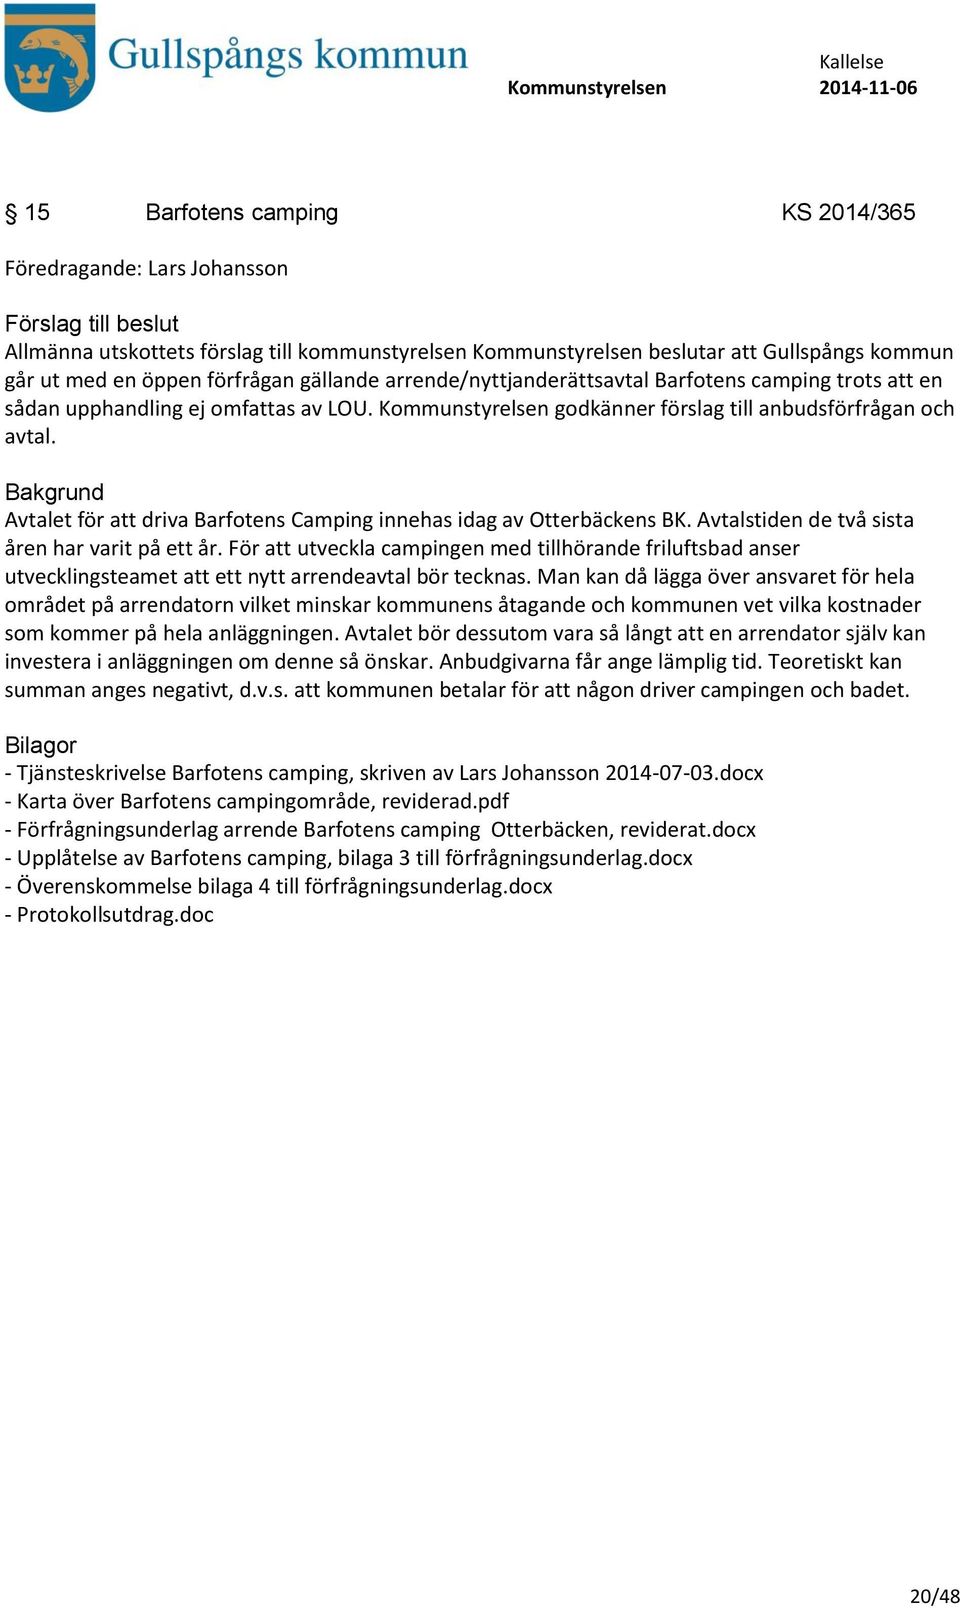 Avtalet för att driva Barfotens Camping innehas idag av Otterbäckens BK. Avtalstiden de två sista åren har varit på ett år.